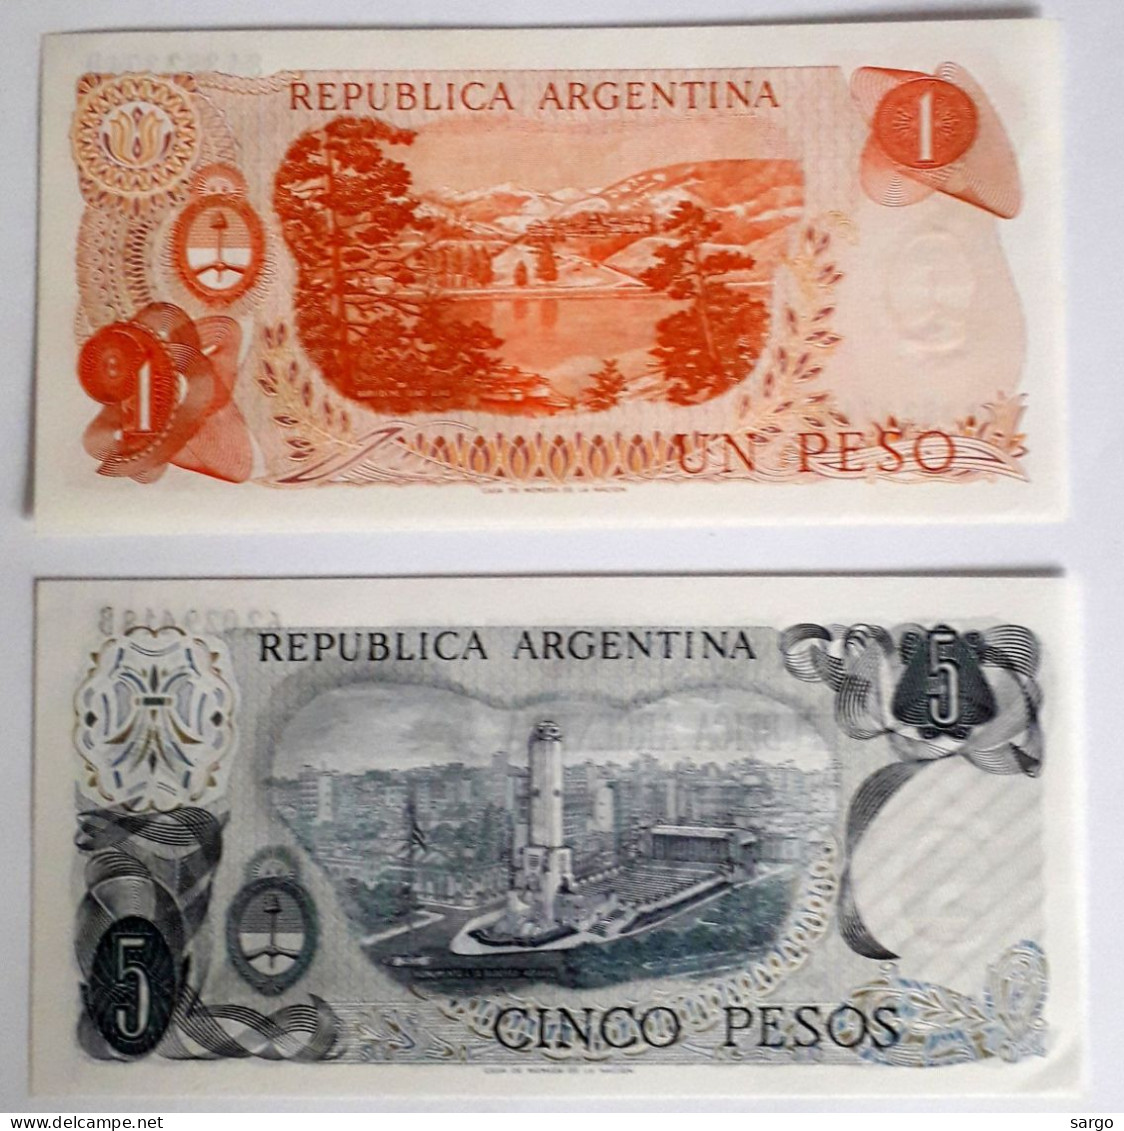 ARGENTINA - 1 PESO (1970-73) P 287, 5 PESOS (1974-76) P 294  UNC - BANKNOTES - PAPER MONEY - CARTAMONETA - - Argentina